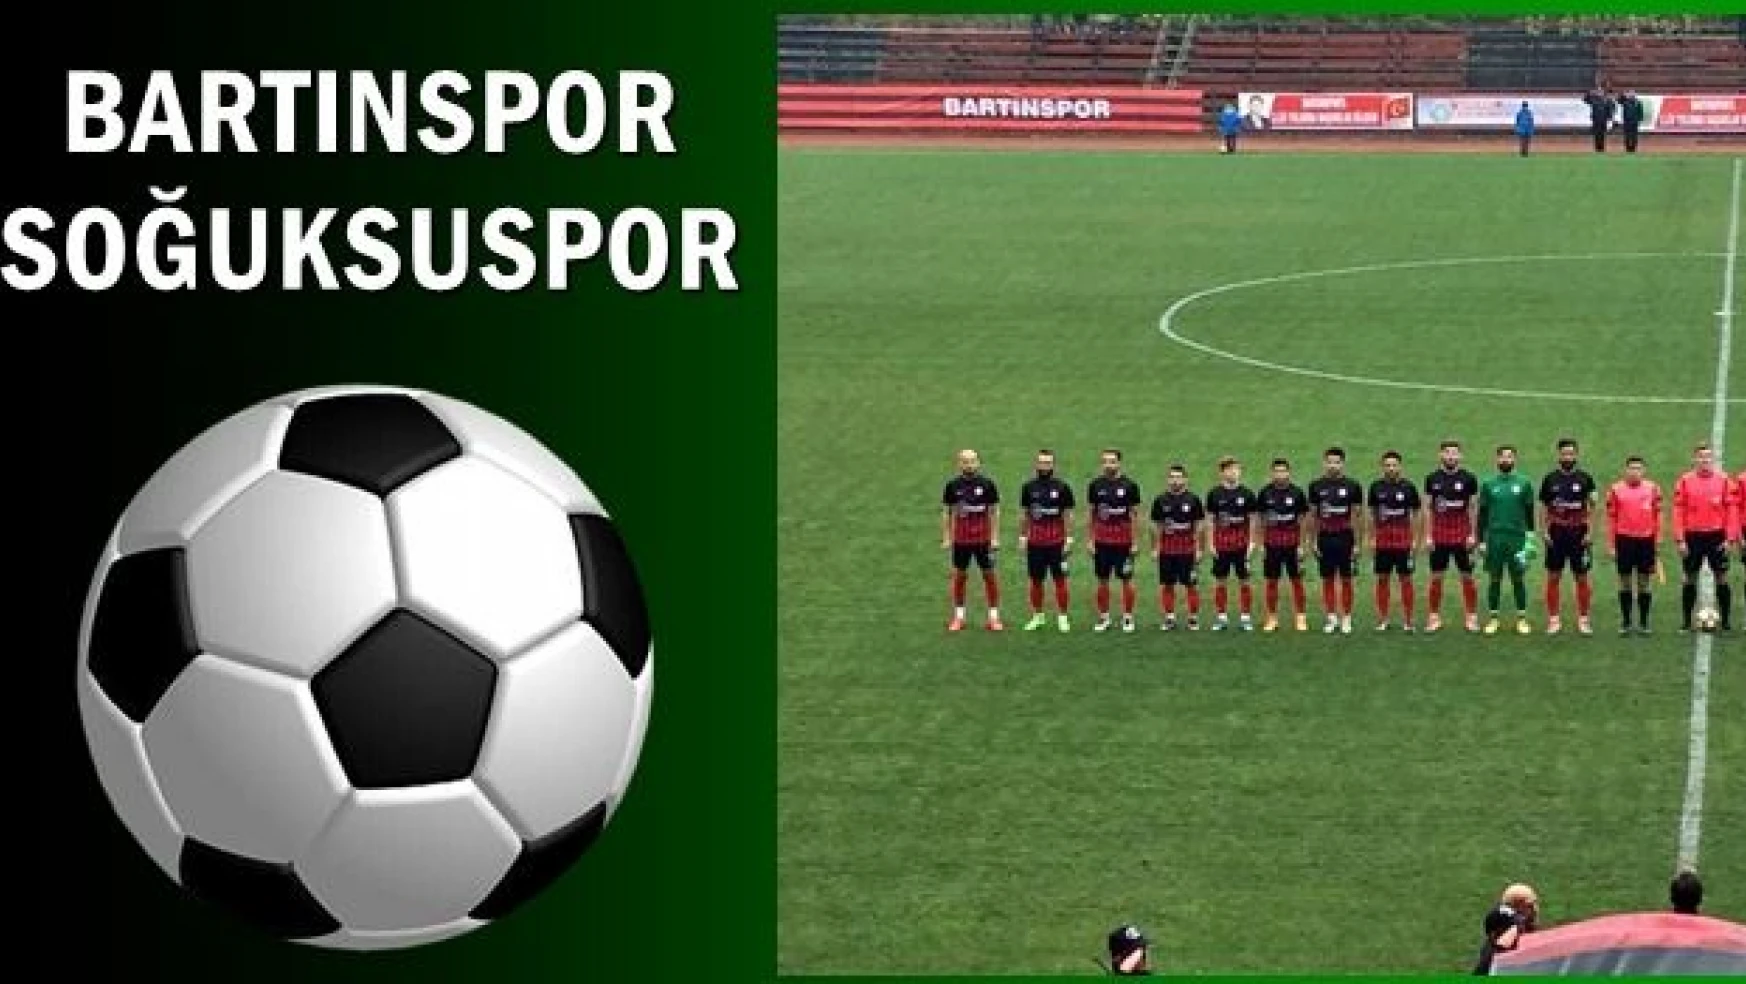 Bartınspor Soğuksuspor maçını 2-0 kazandı